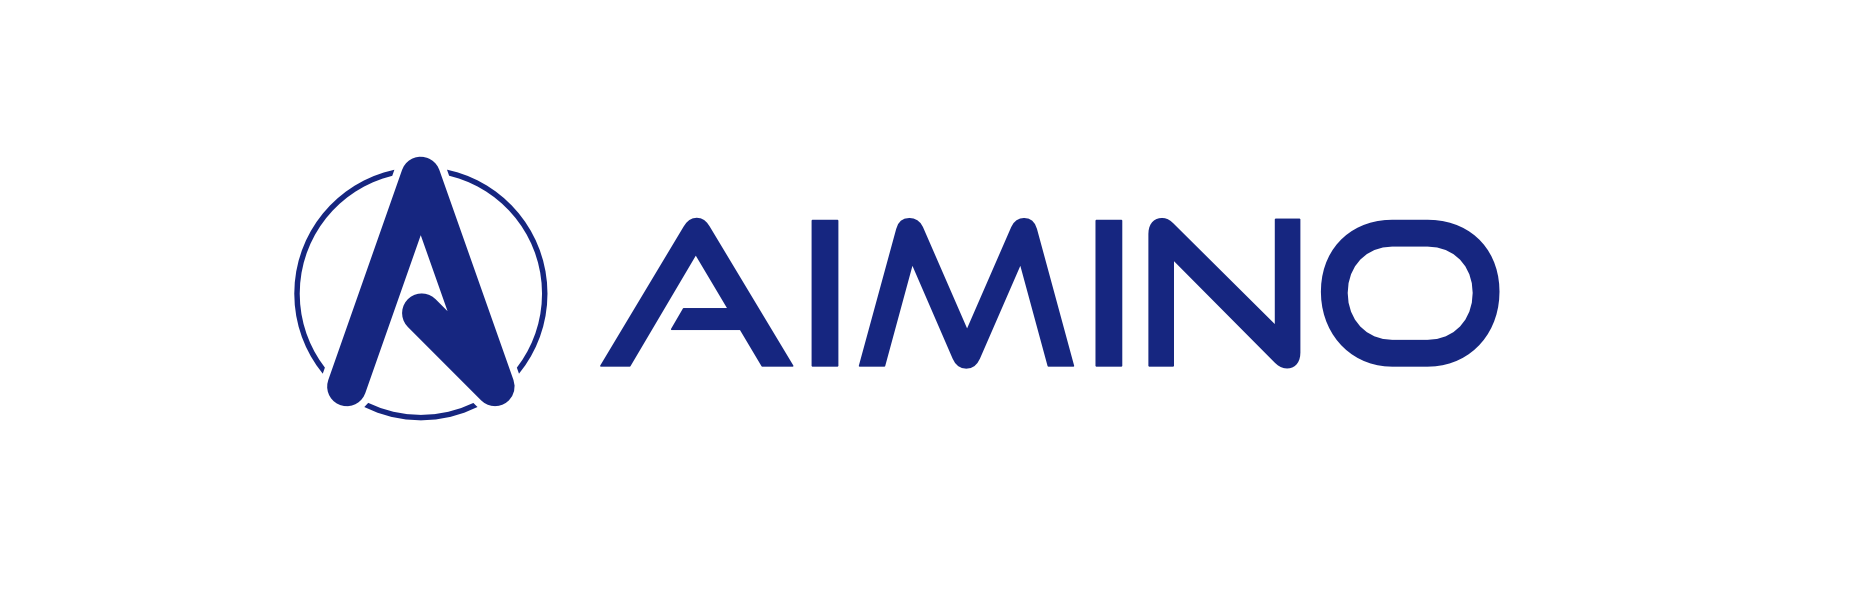 Aimino Logo + name blau_3